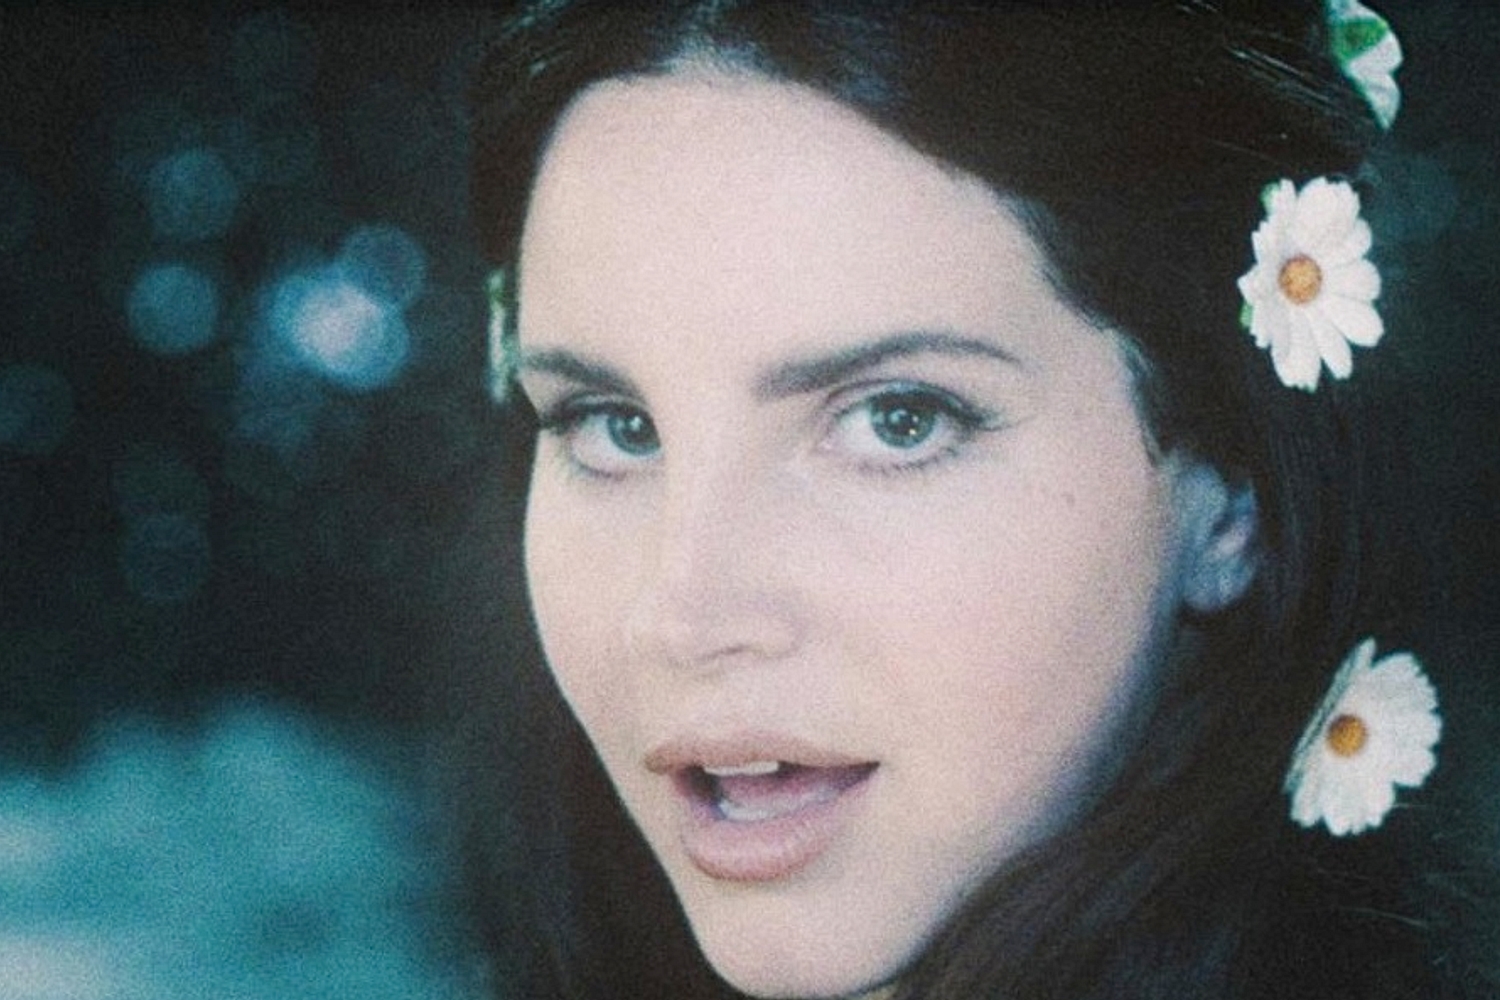 Listen to Lana Del Rey’s new song ‘Coachella - Woodstock in My Mind’